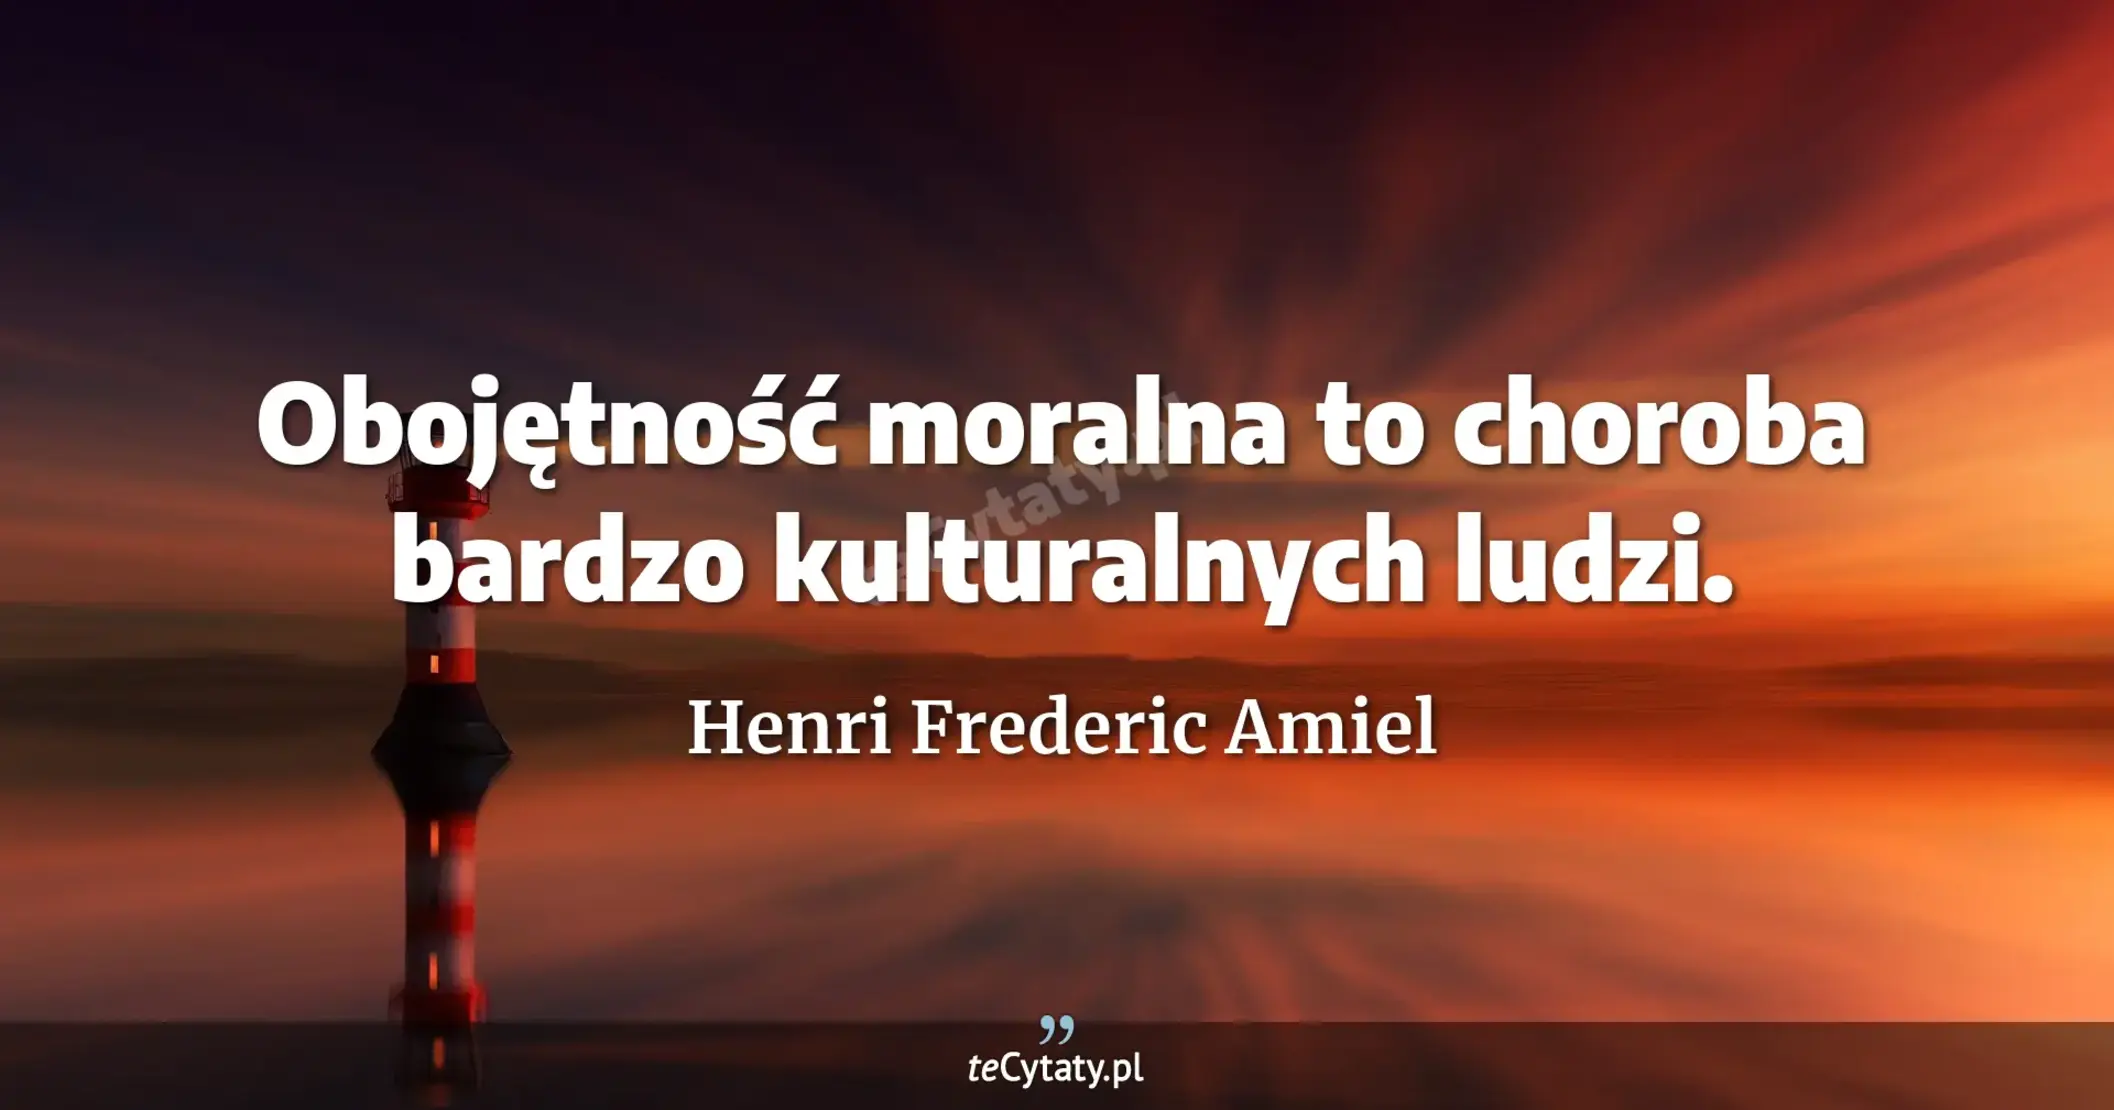 Obojętność moralna to choroba bardzo kulturalnych ludzi. - Henri Frederic Amiel